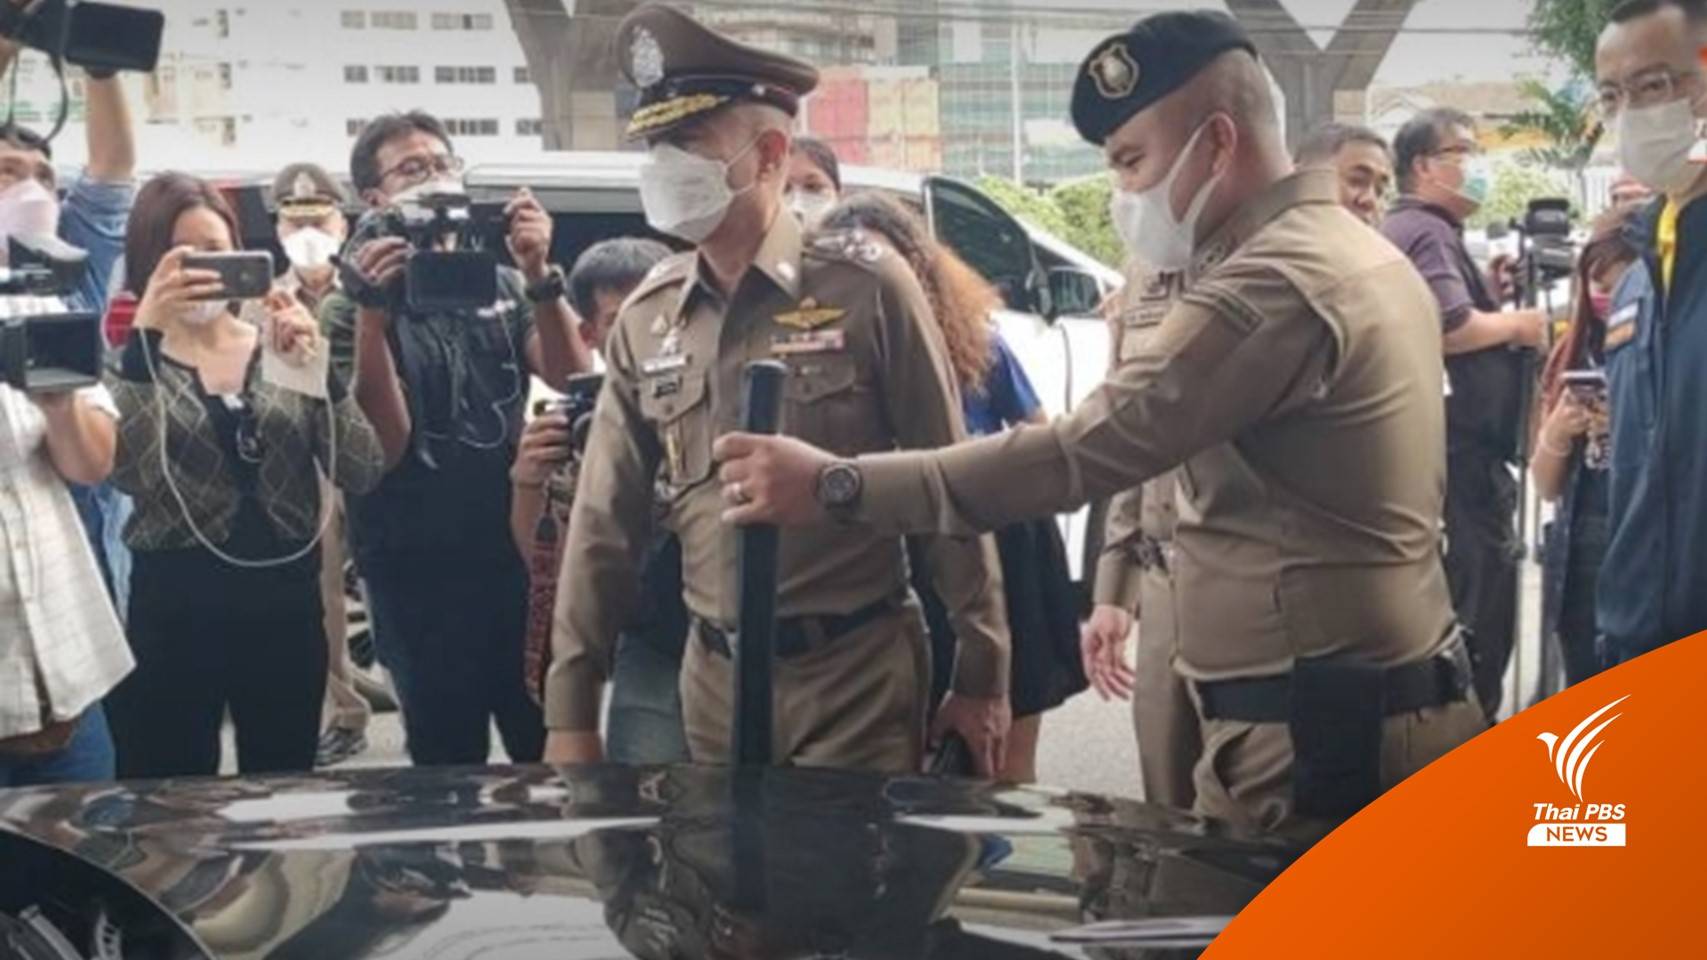 เร่งขยายผลหลังจับนายทุนจีน สวมบัตรคนไทย-ใช้รถติดธงคล้ายรถสถานทูต